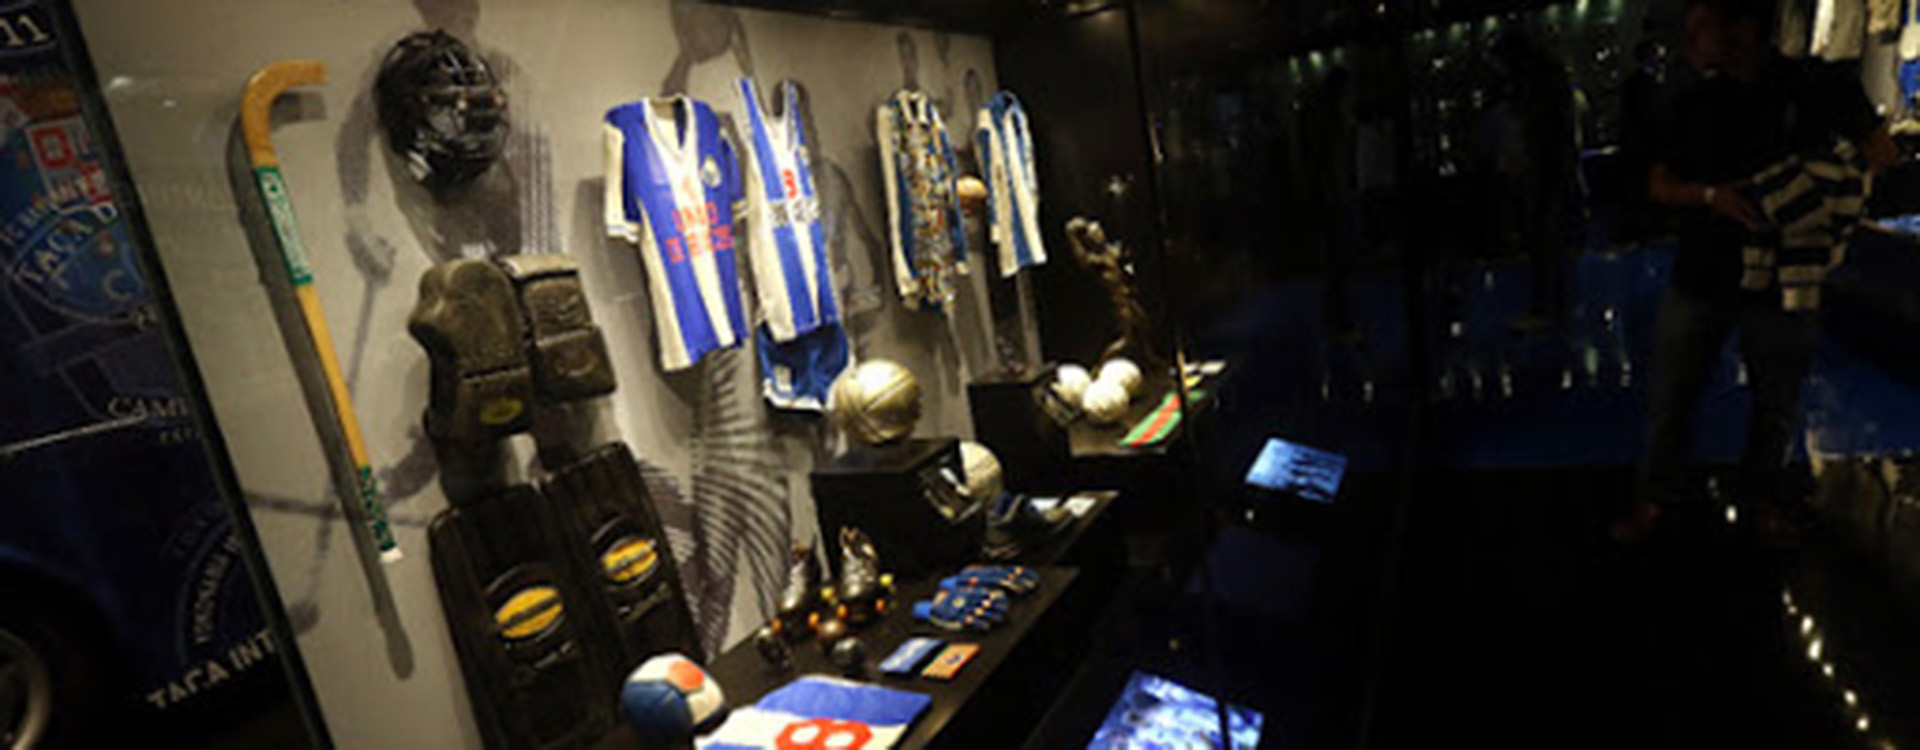 Instal.lació CRAVOS. Museu FC Porto